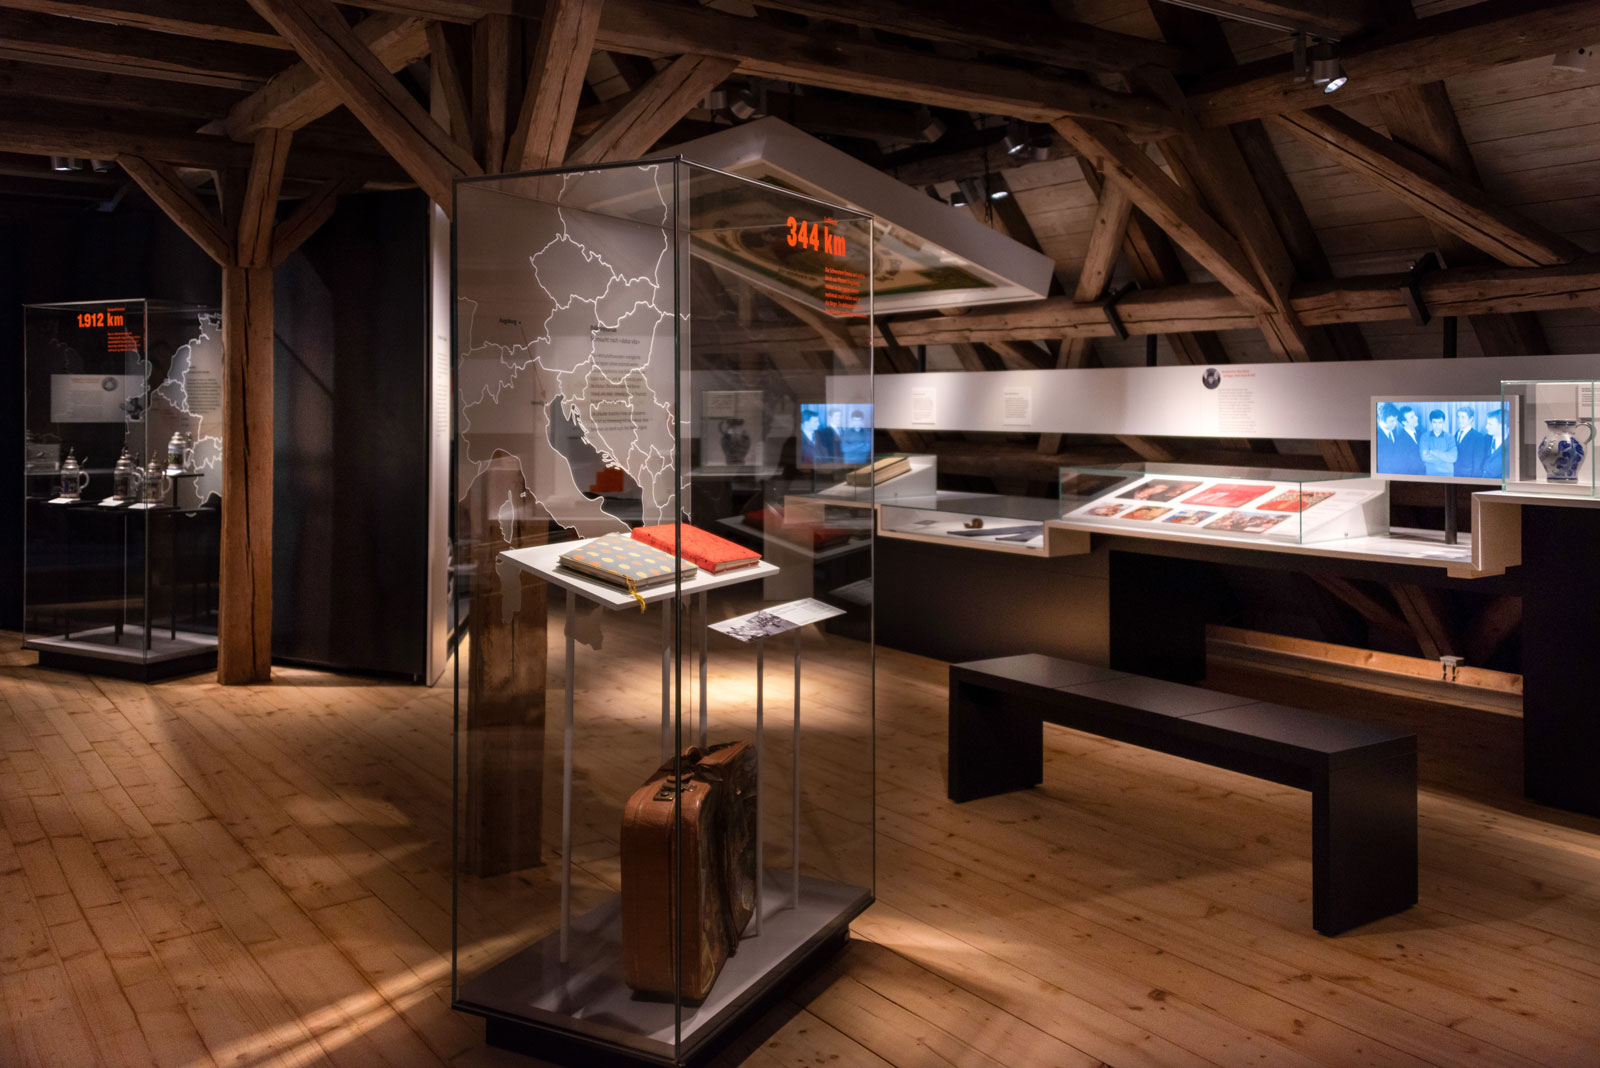 Das Referenzbild für Ausstellungsgestaltung aus der Dauerausstellung Tradition und Umbruch zeigt Ganzglas-Vitrinen.